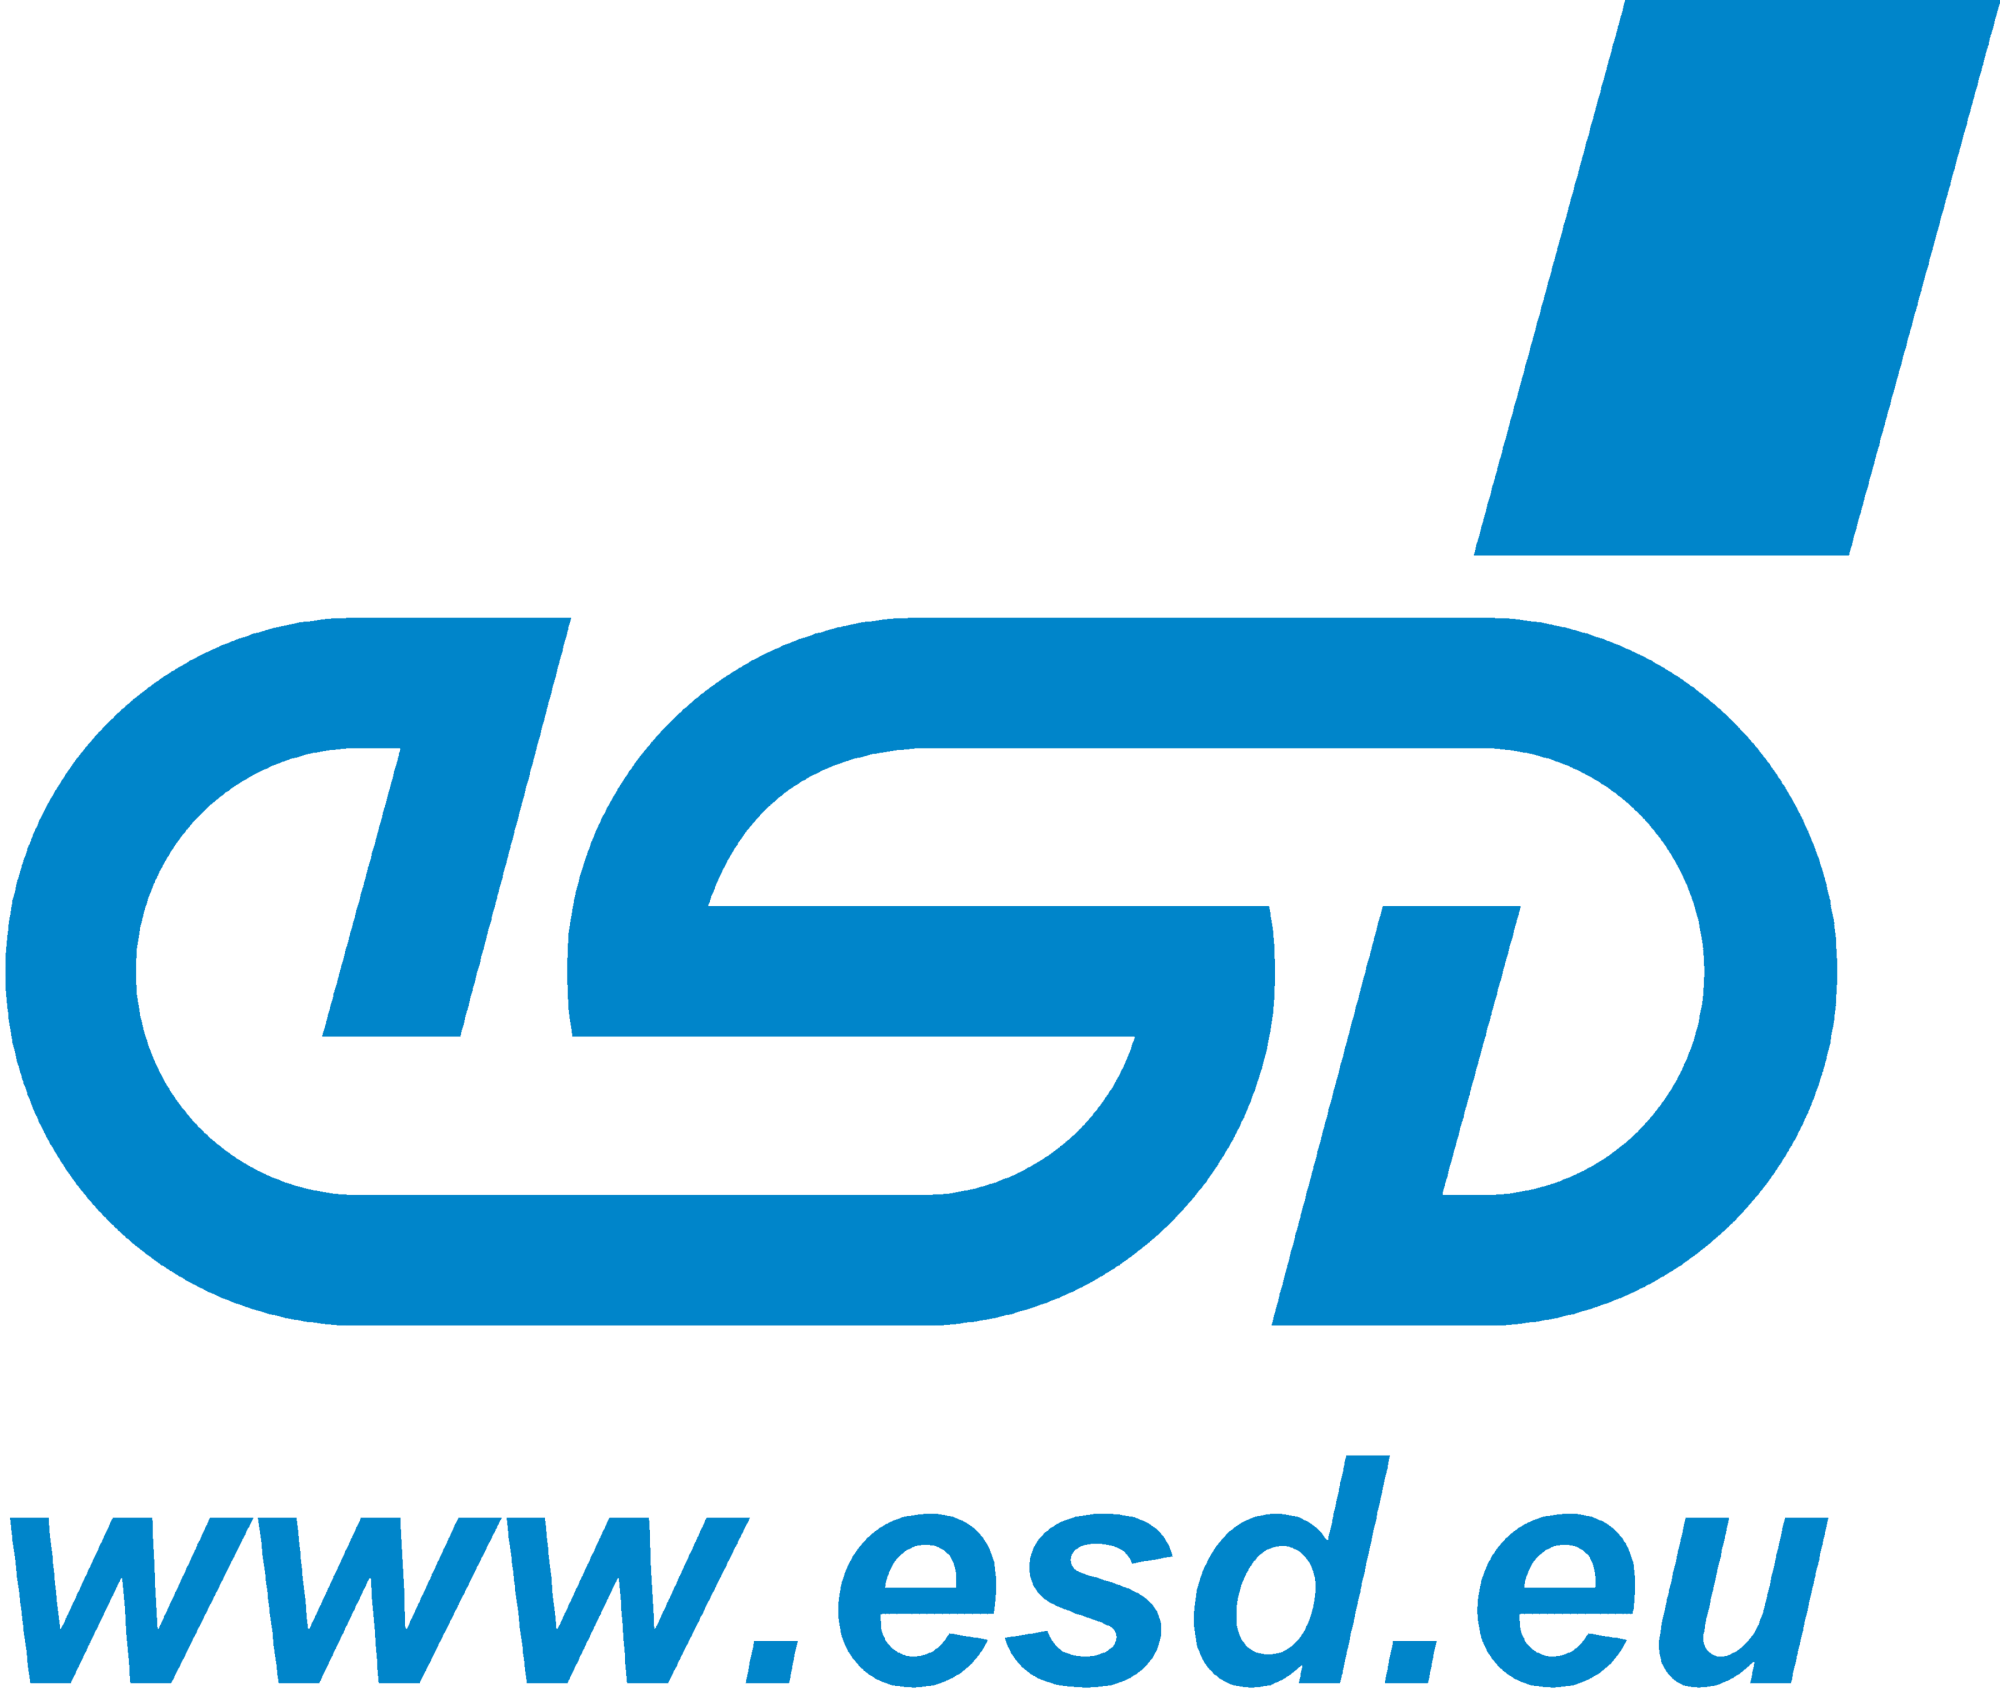 esd_logo